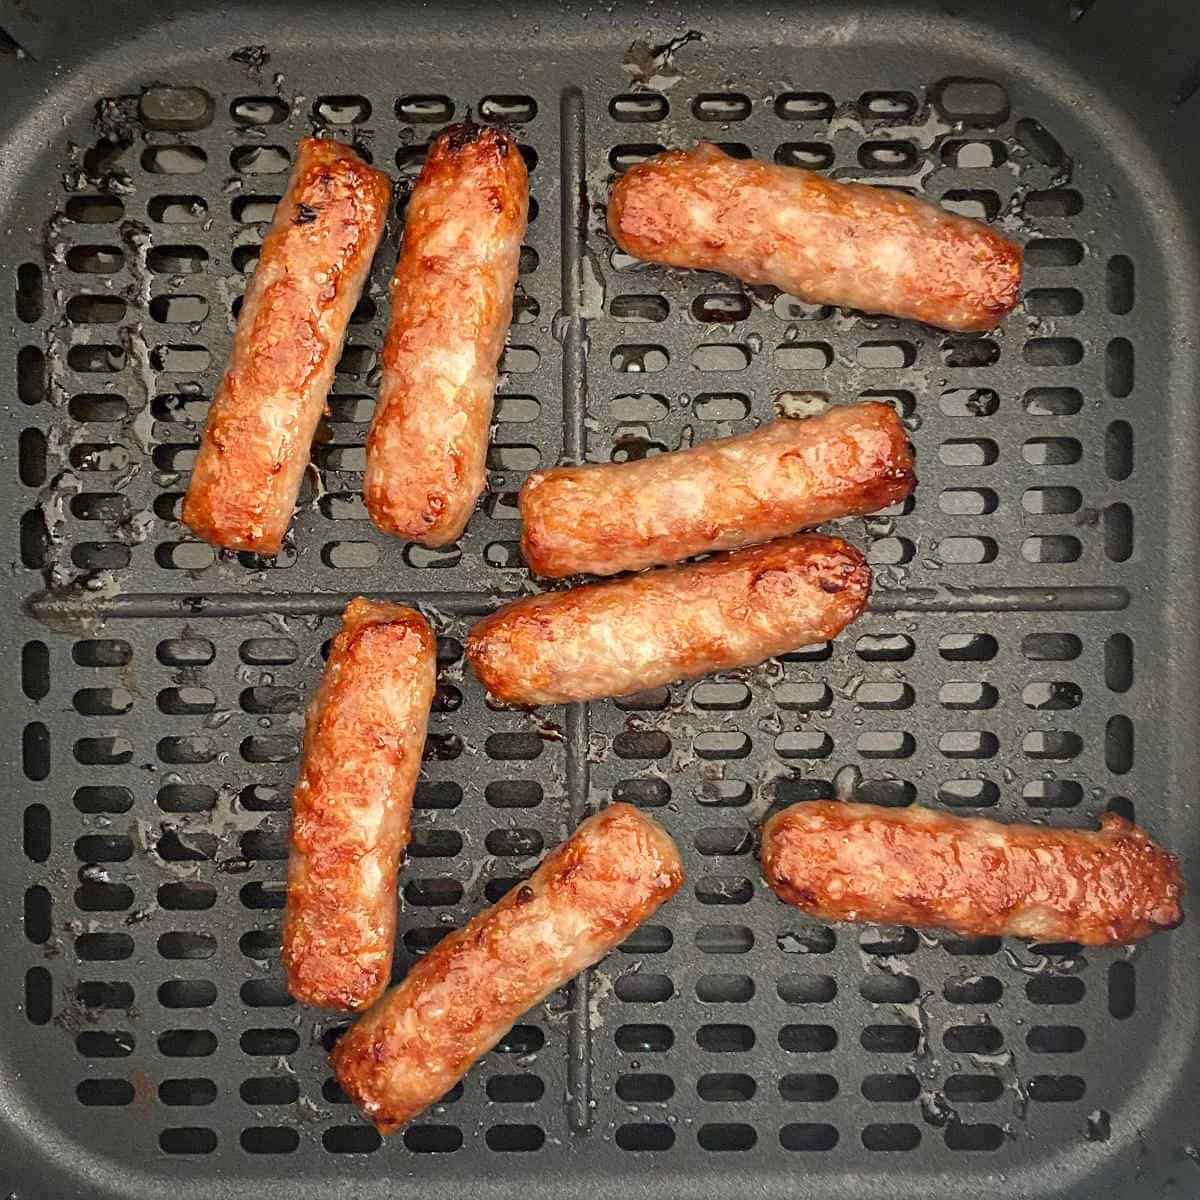 breakfast sausage links cooked in air fryer basket